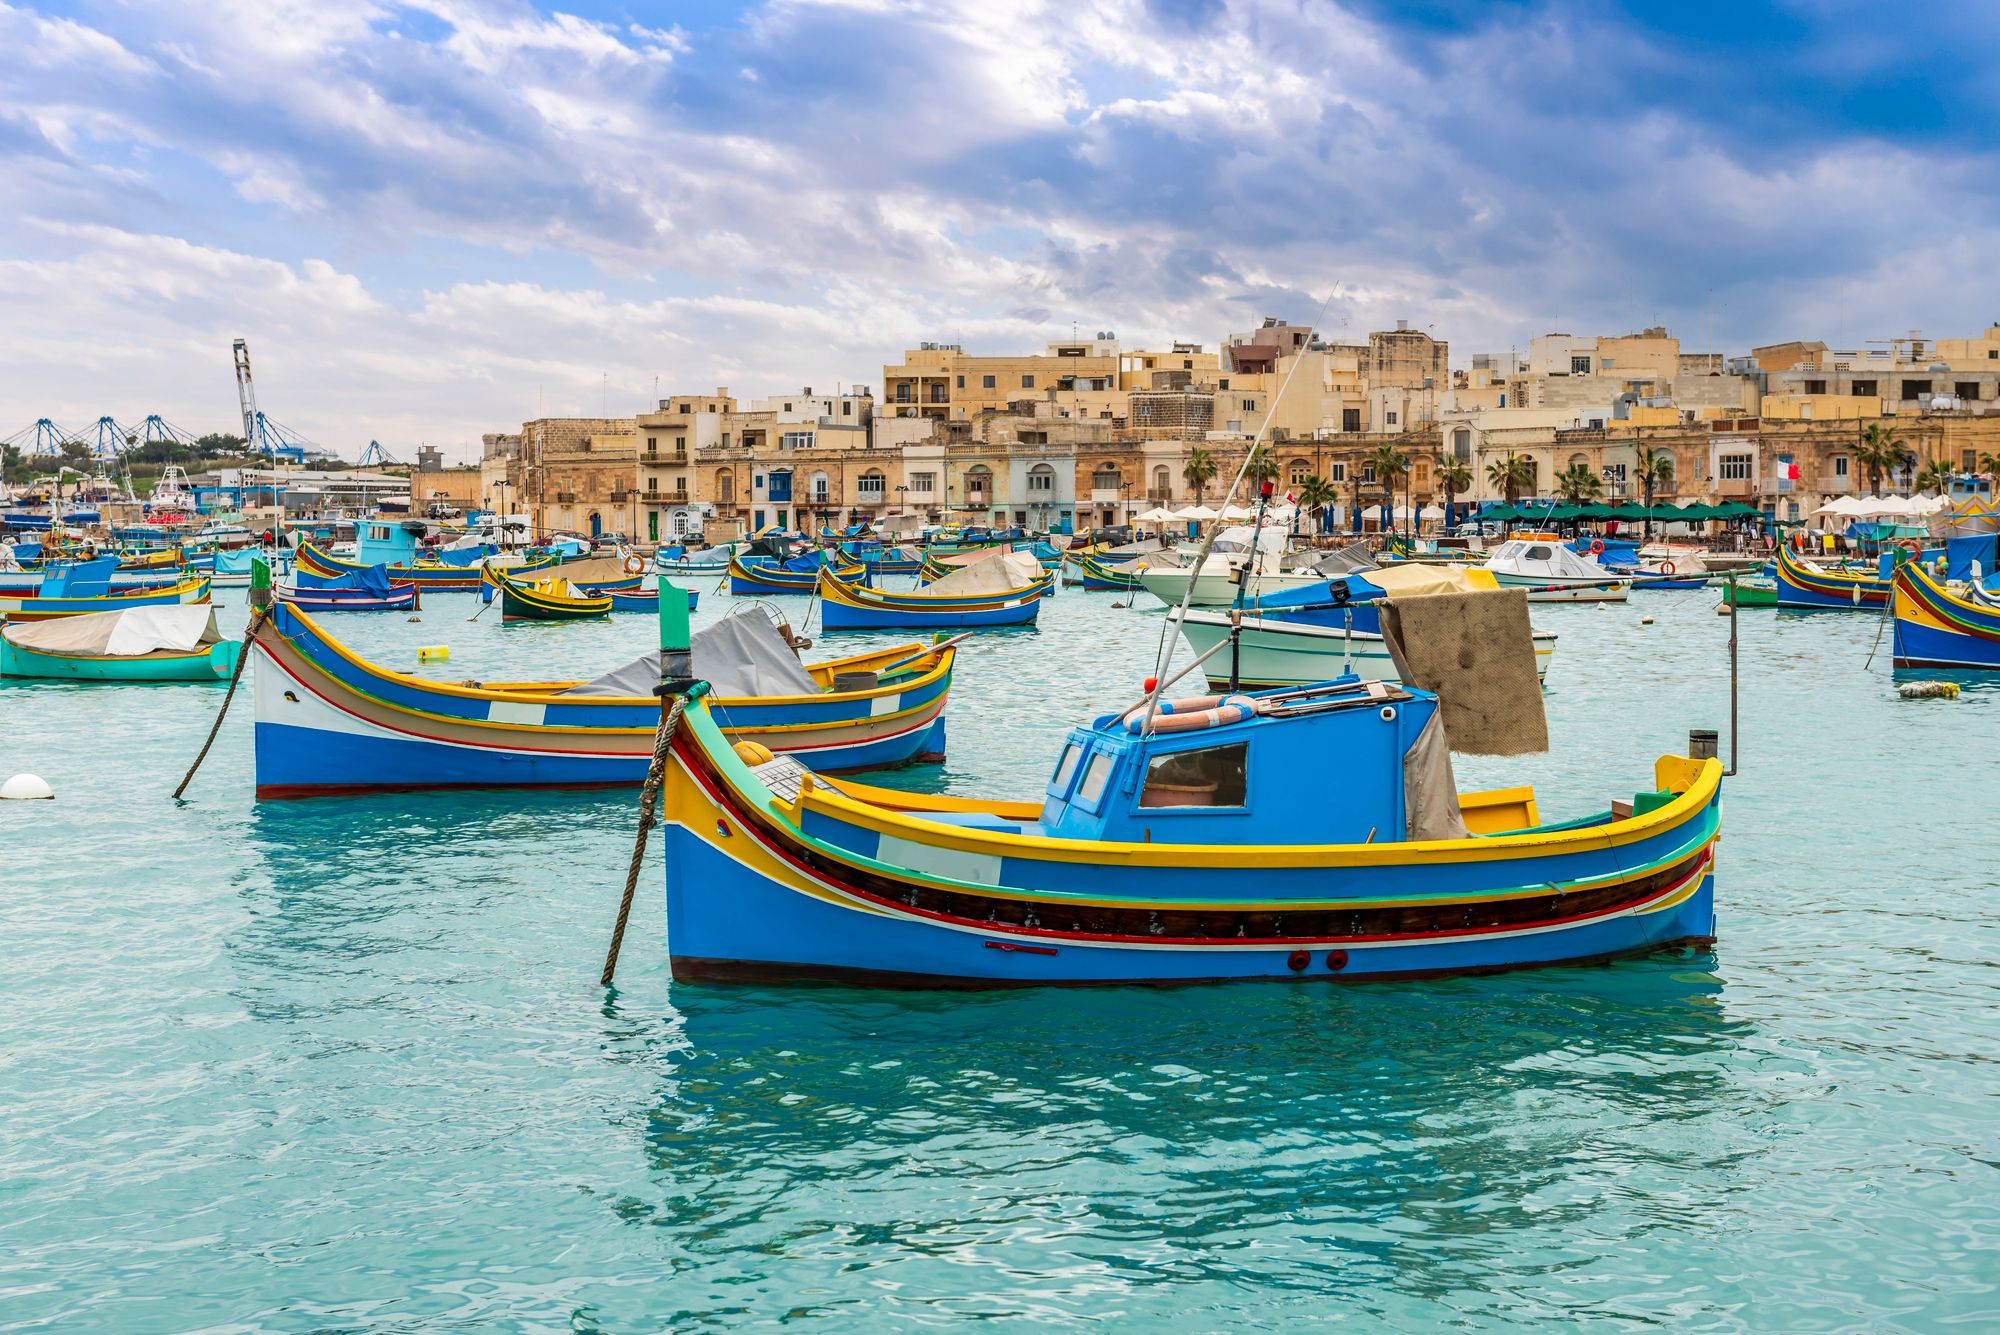 Fishing boats in Marsaxlokk Malta